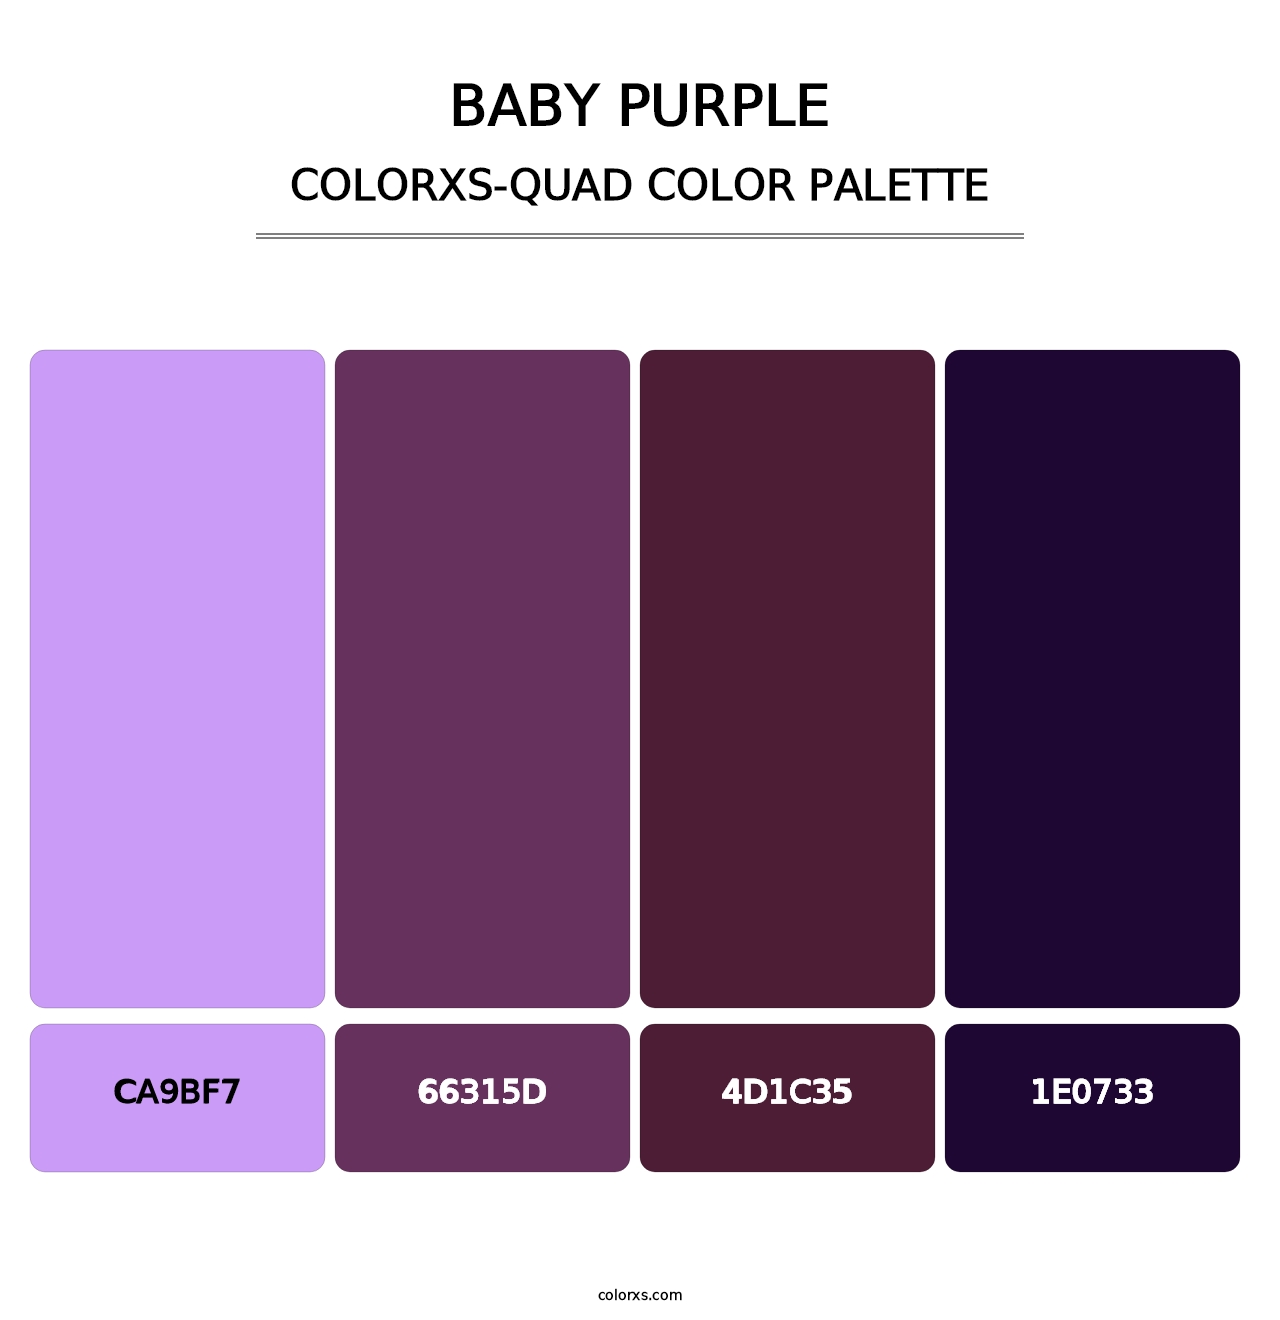 Baby Purple - Colorxs Quad Palette